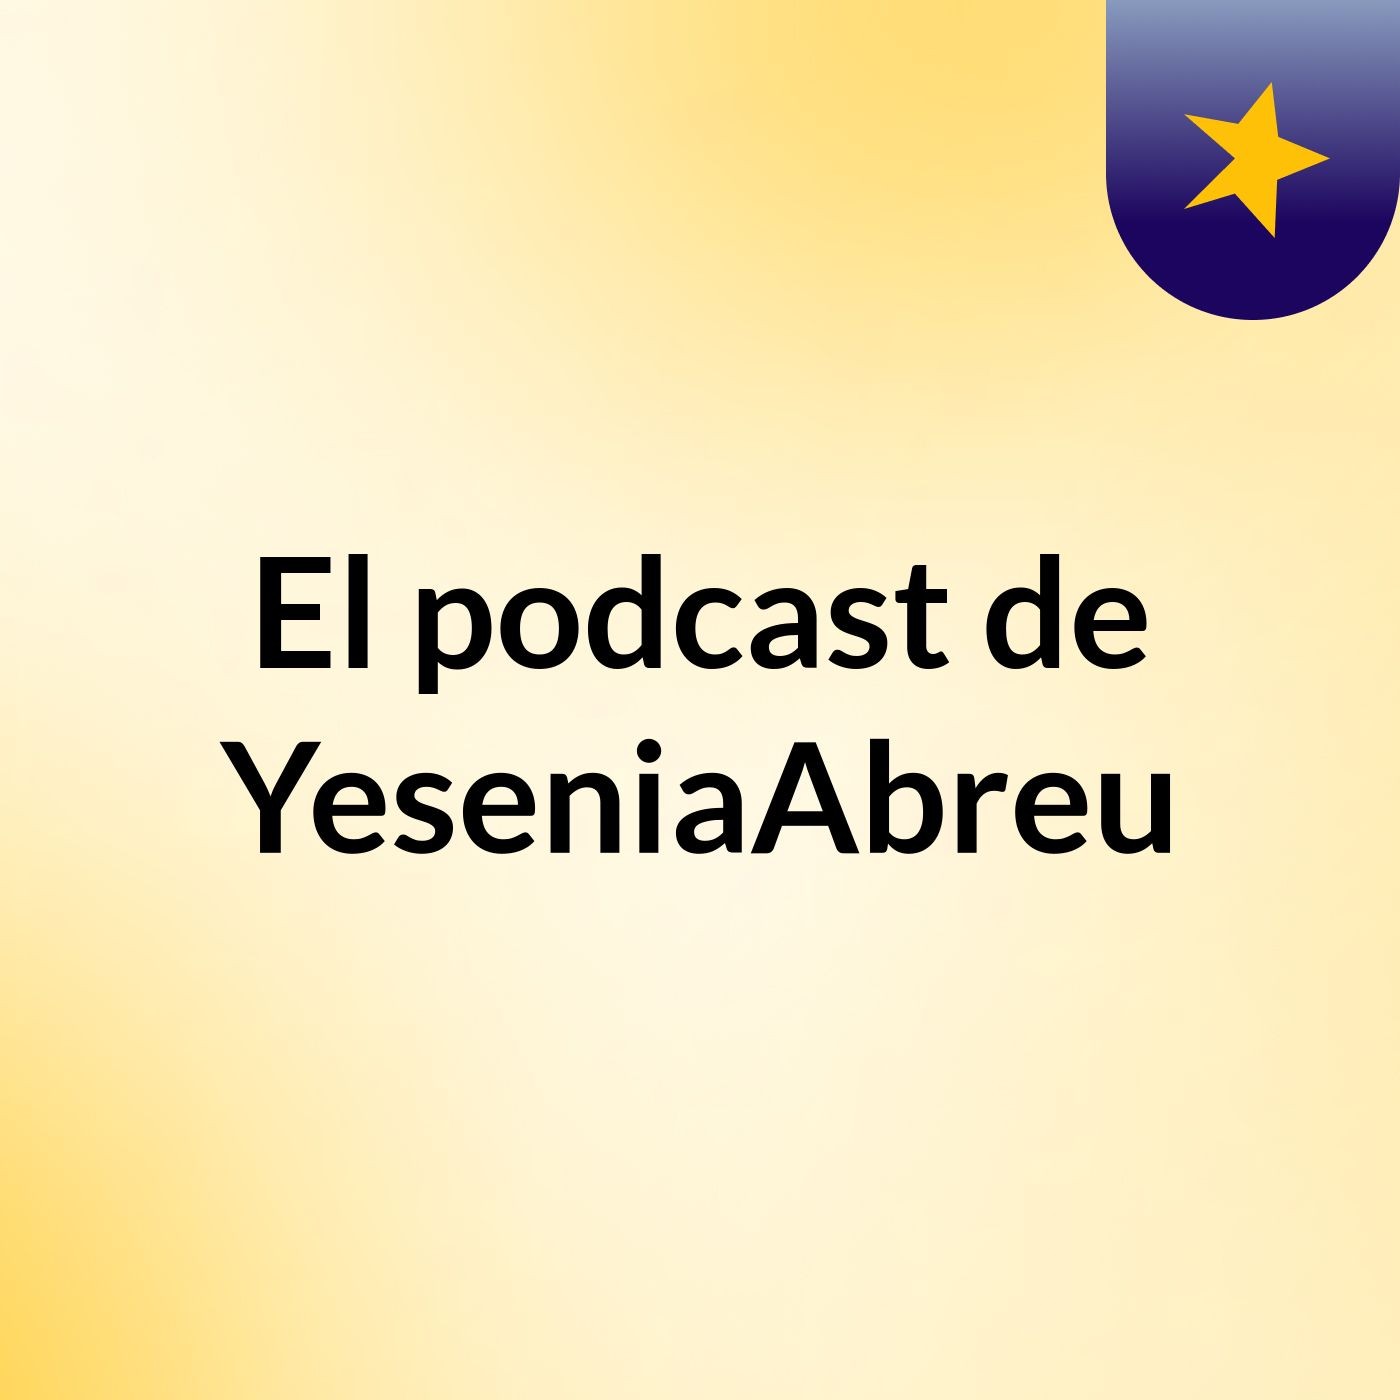 El podcast de YeseniaAbreu